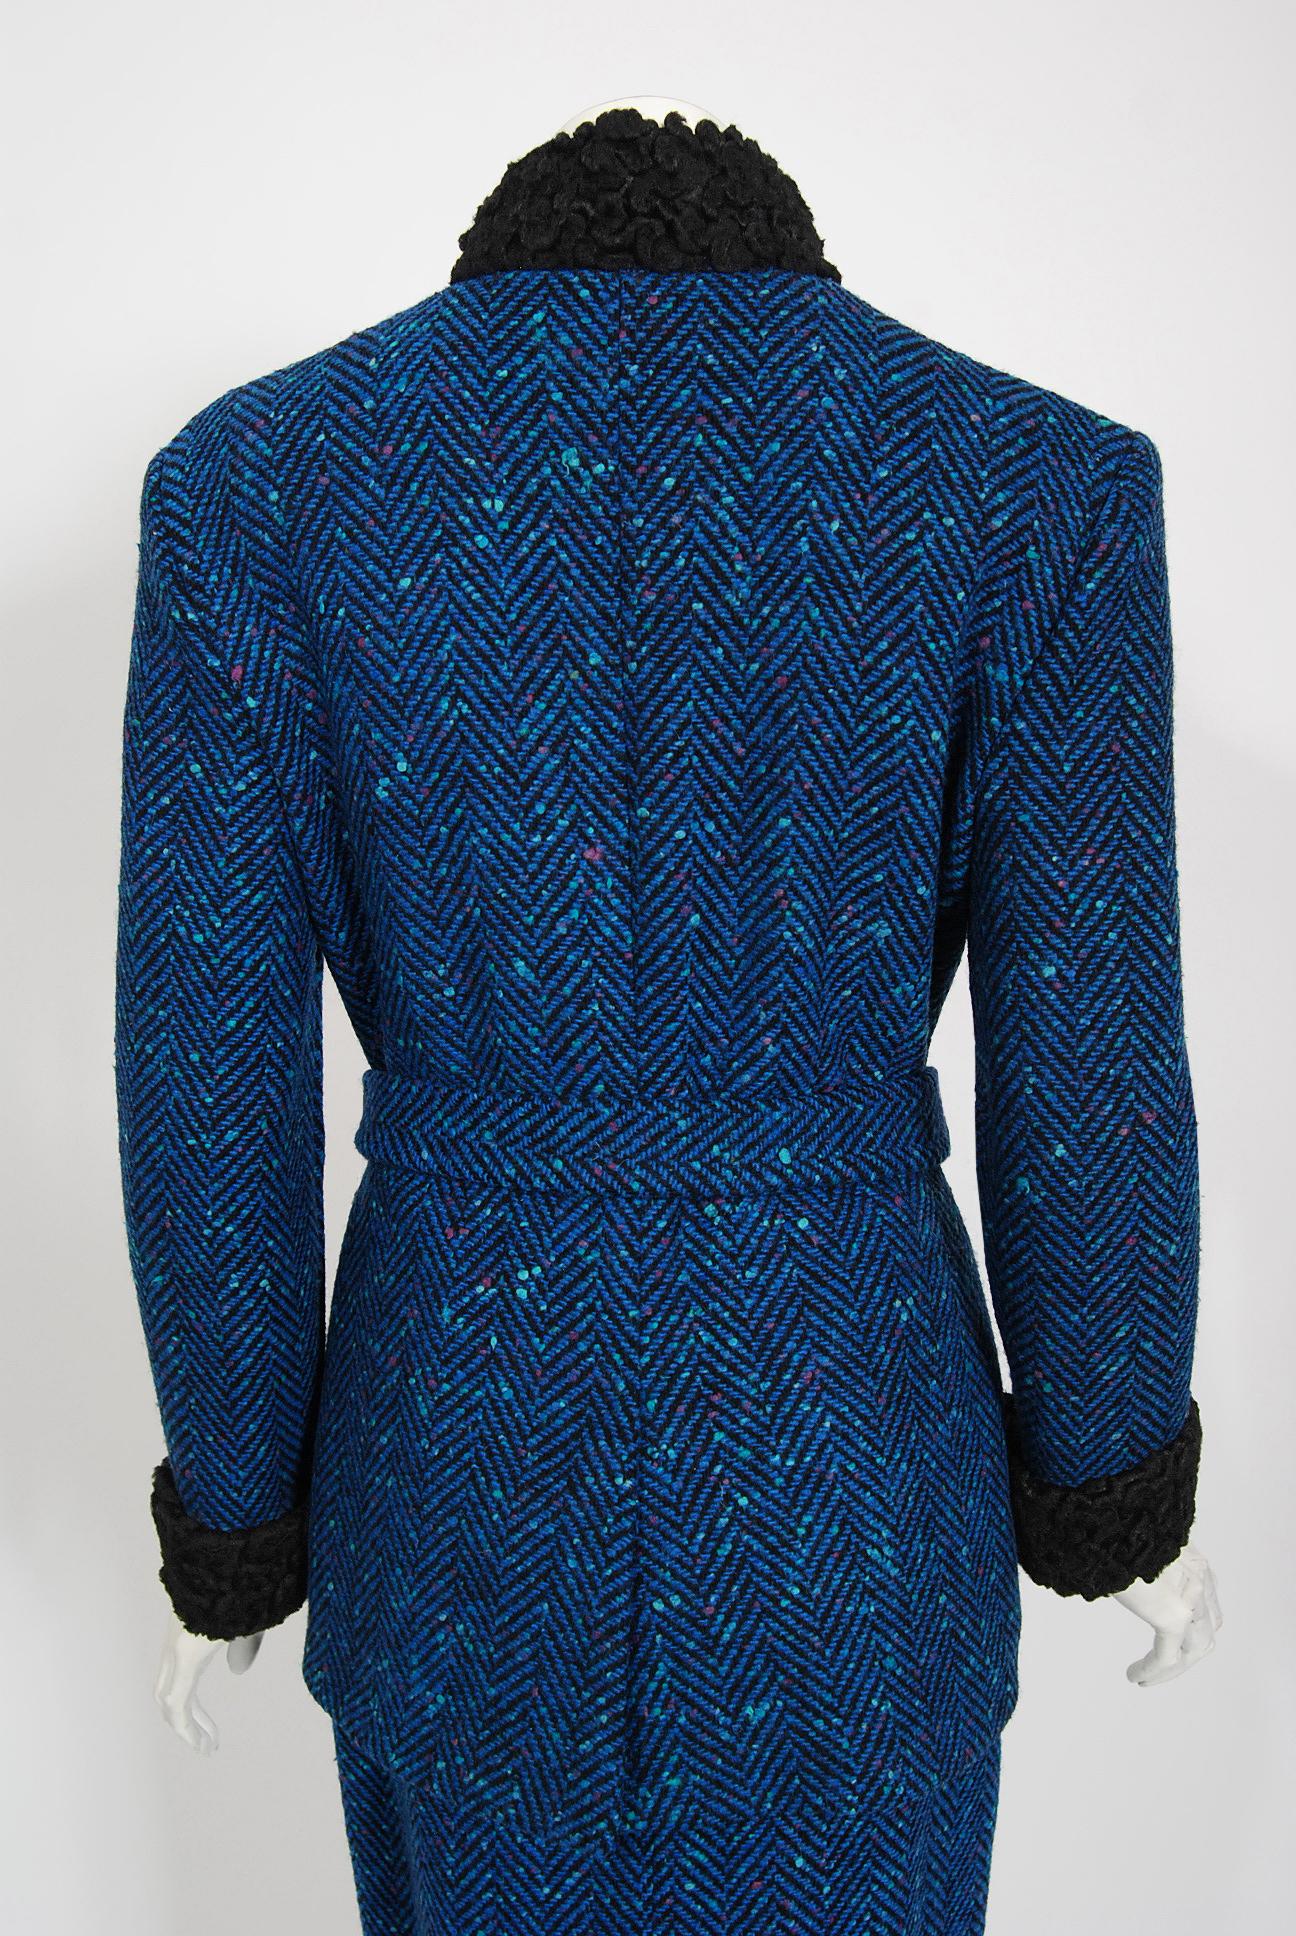 Vintage 1970s Biba of London Blue Chevron Wool & Faux-Fur Belted Jacket w/ Skirt For Sale 6